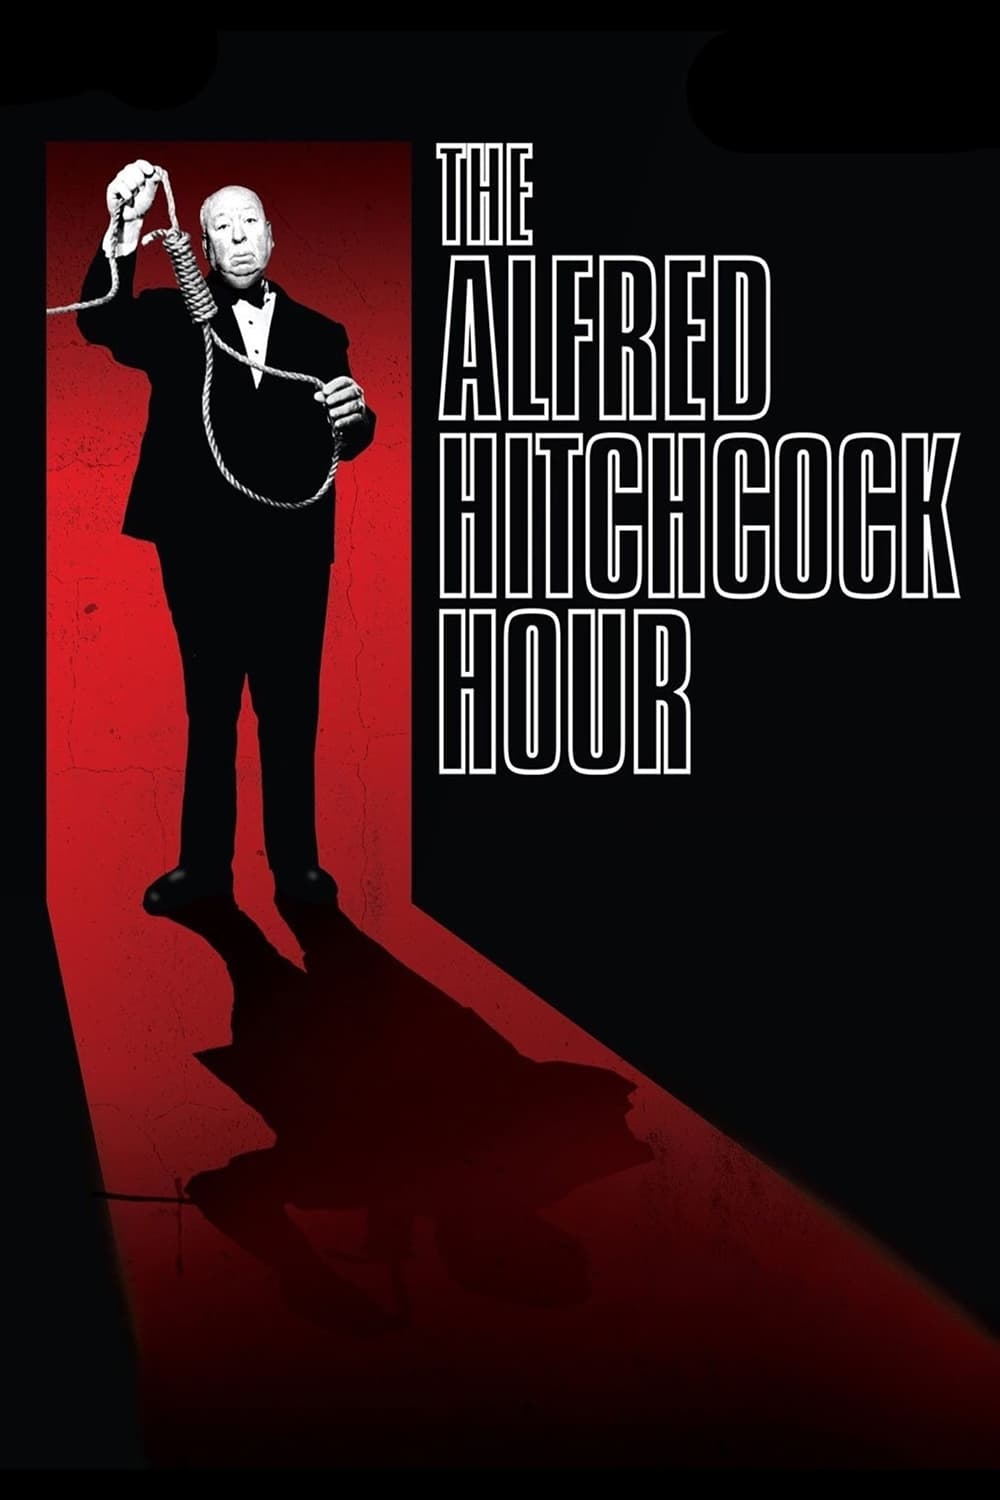 La hora de Alfred Hitchcock (1962)